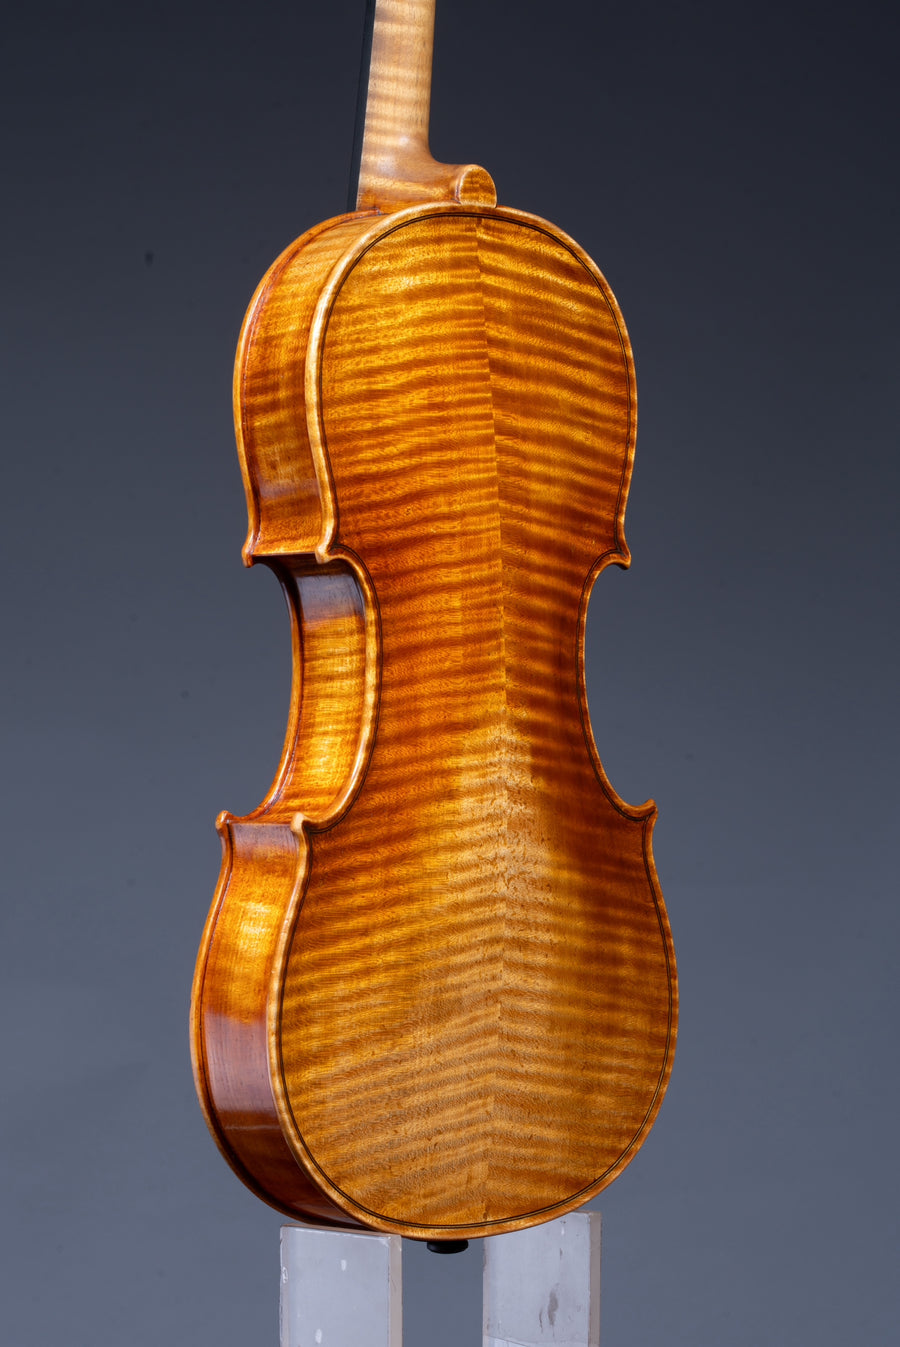 A Great American Violin By 7th Generation Maker, Hannah Fenn - 2023.